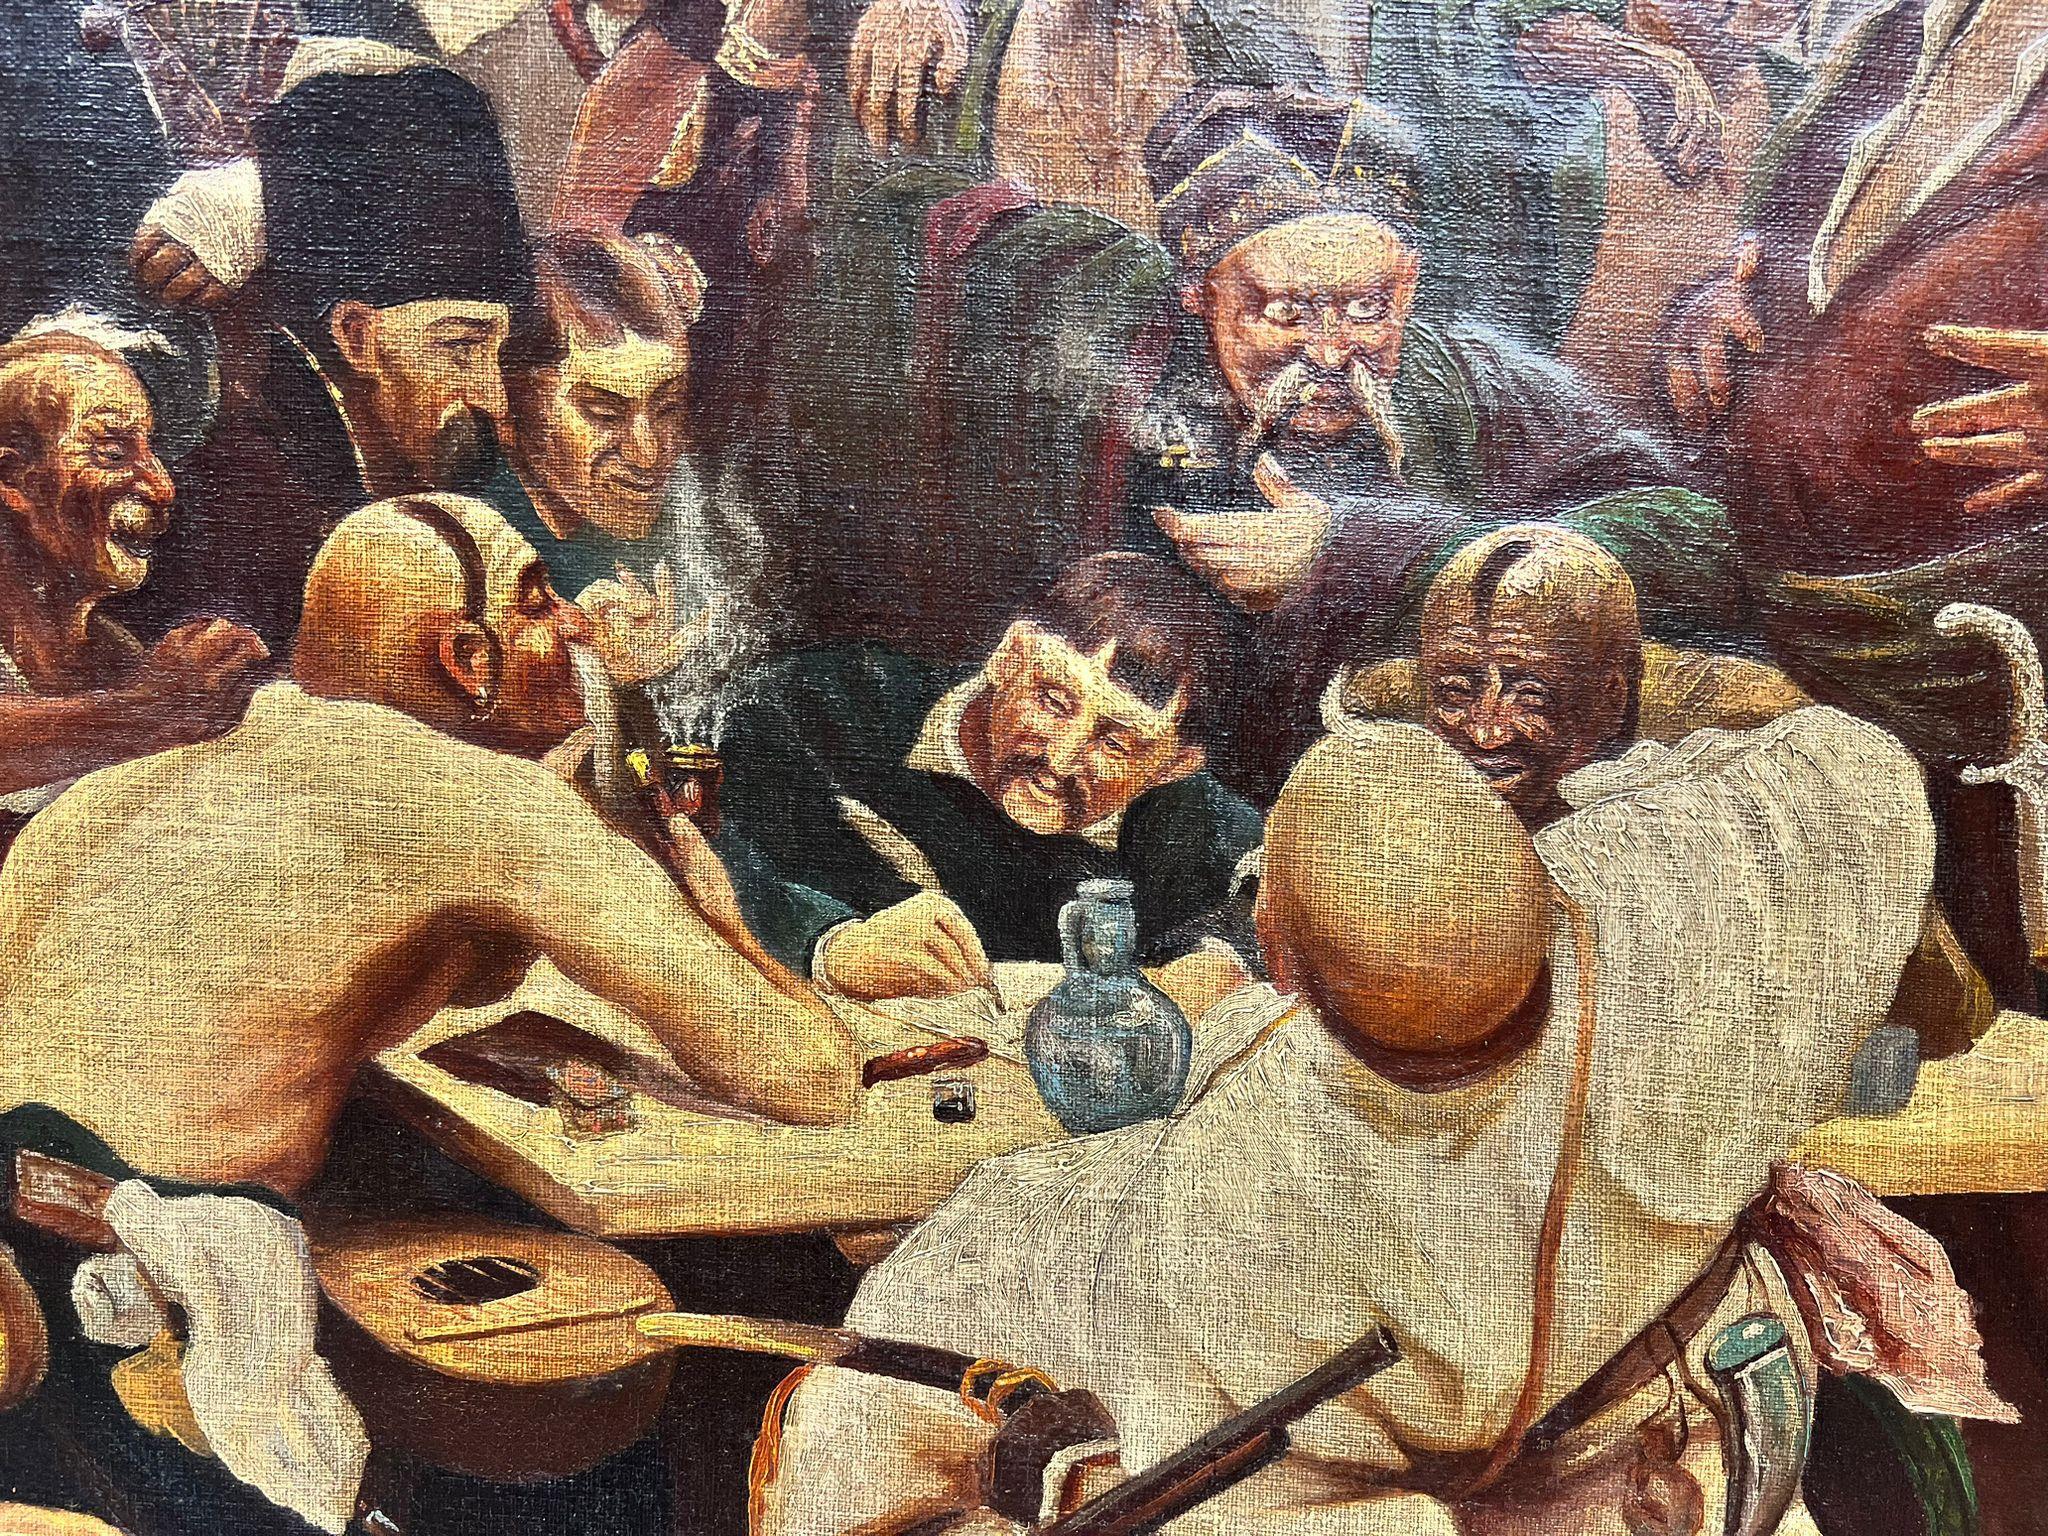 zaporozhian cossacks painting